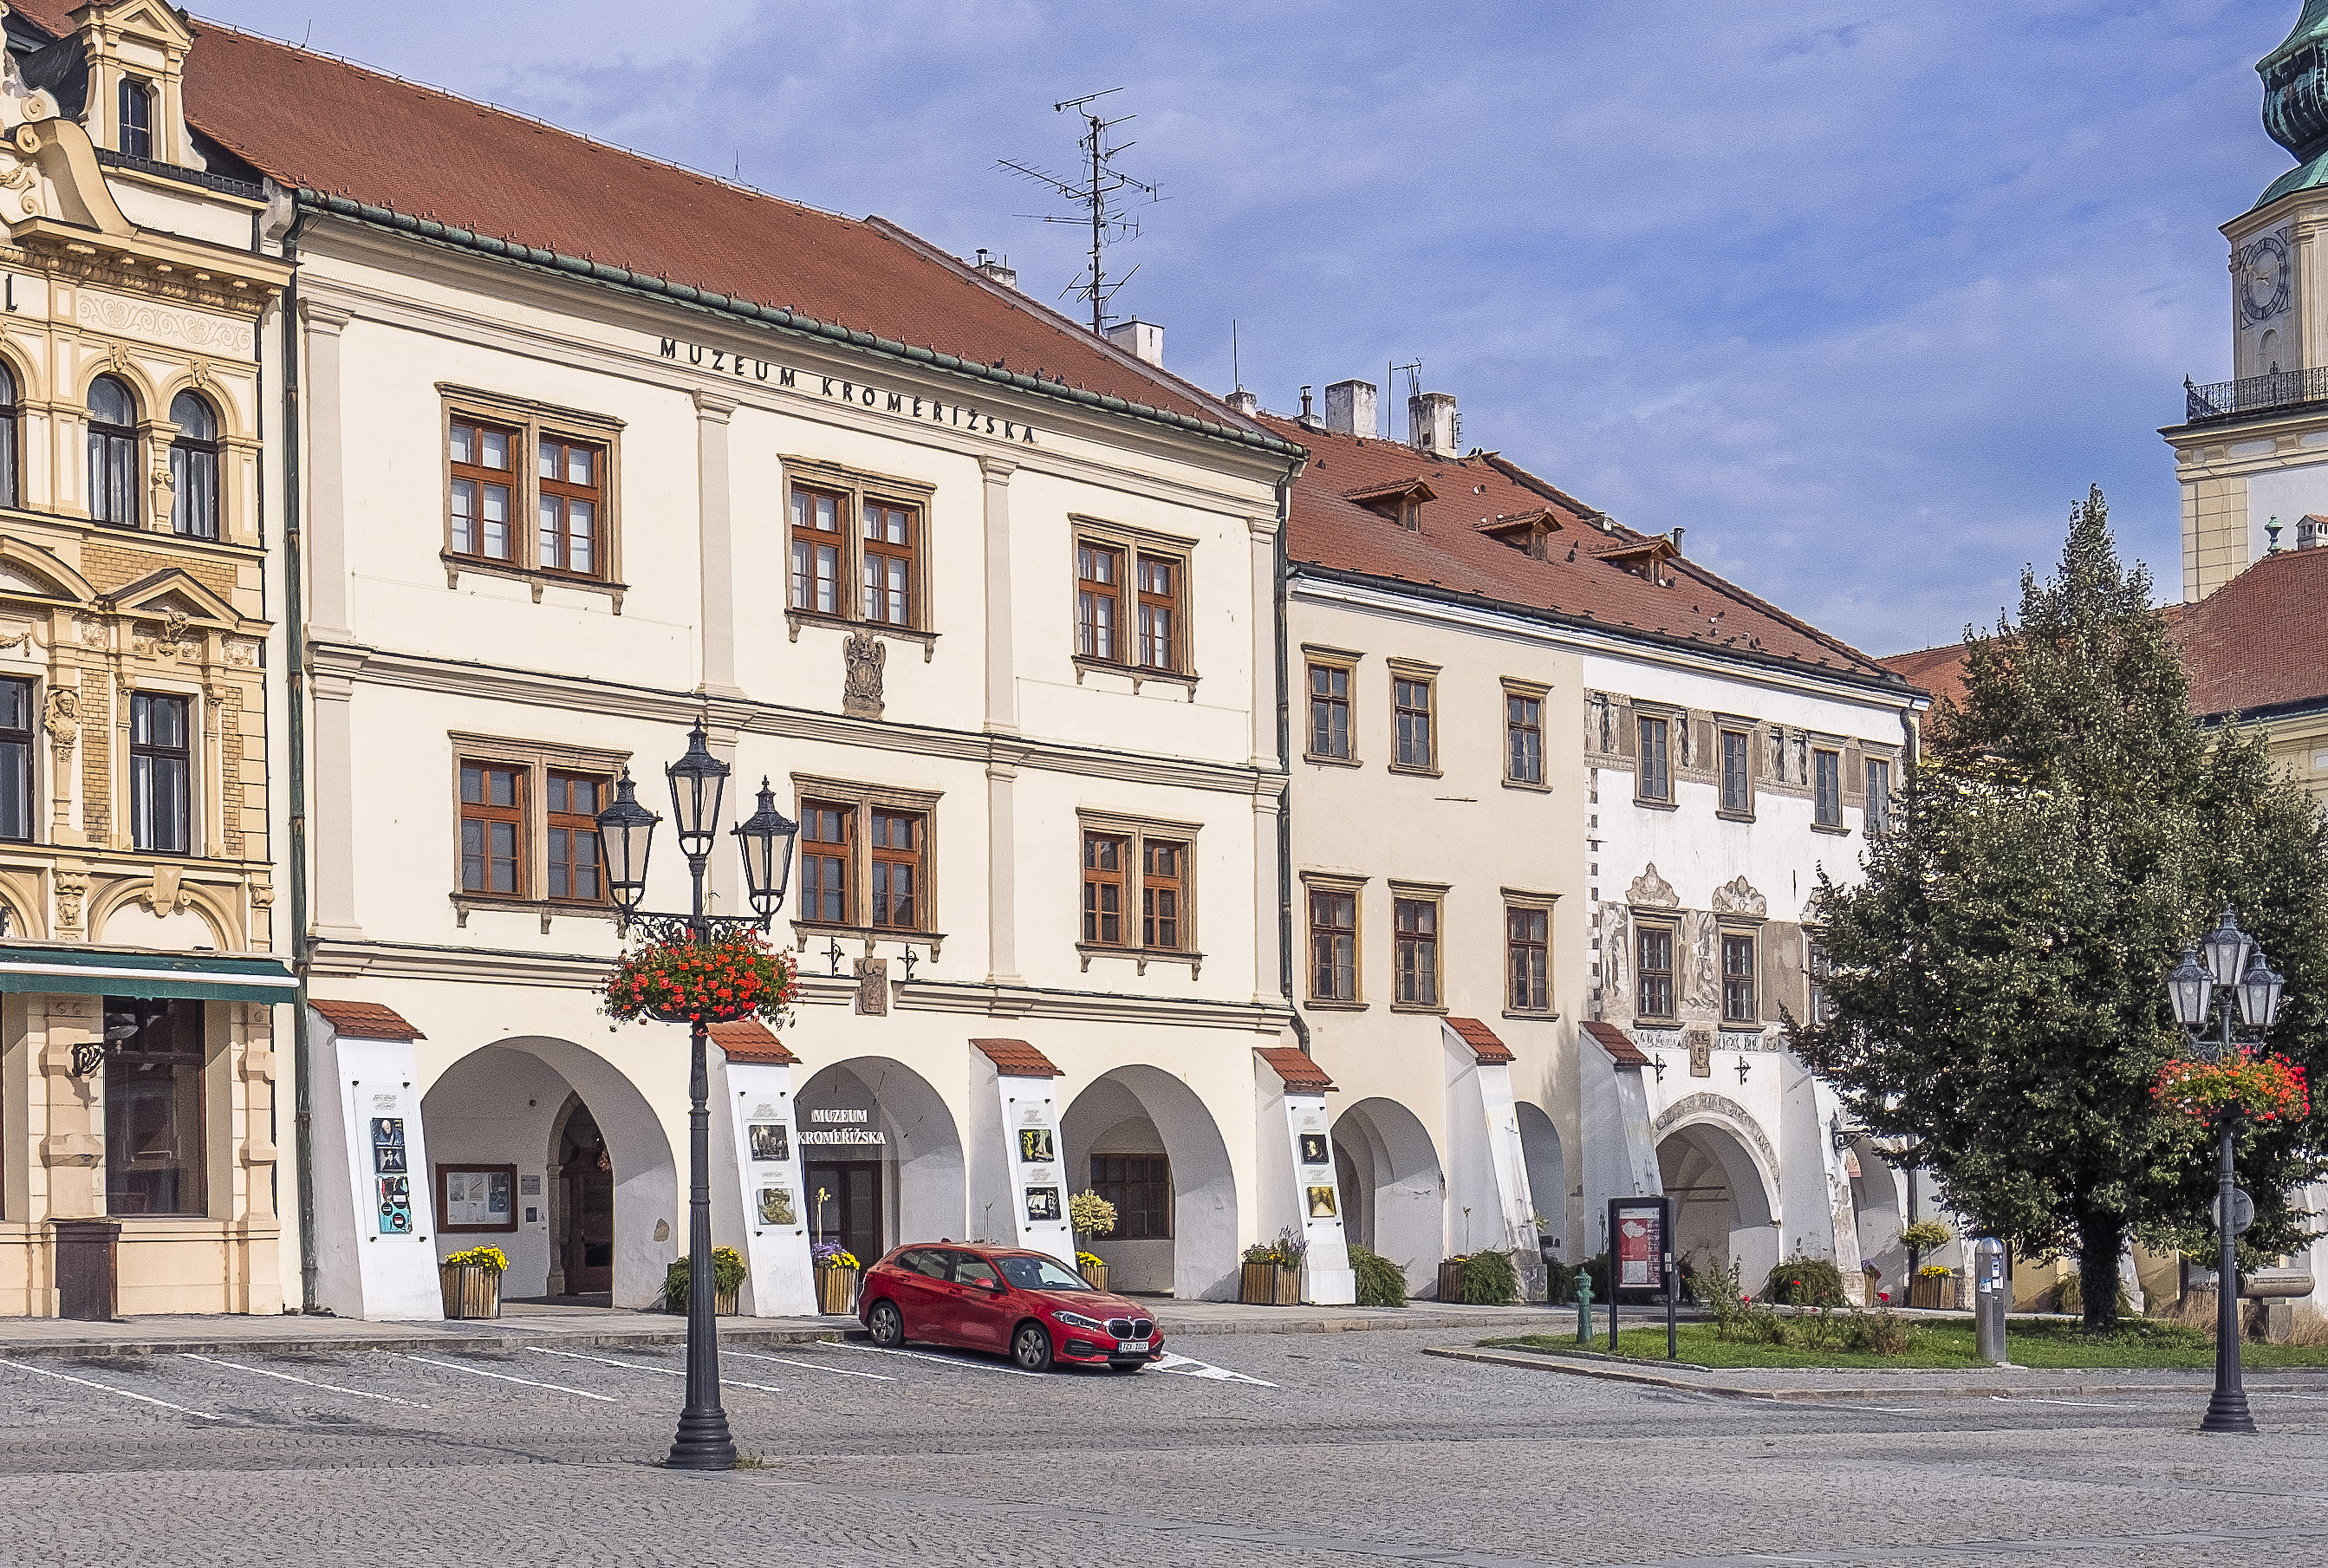 Muzeum Kroměřížska, v jehož podloubí bude umístěna pátá luneta.